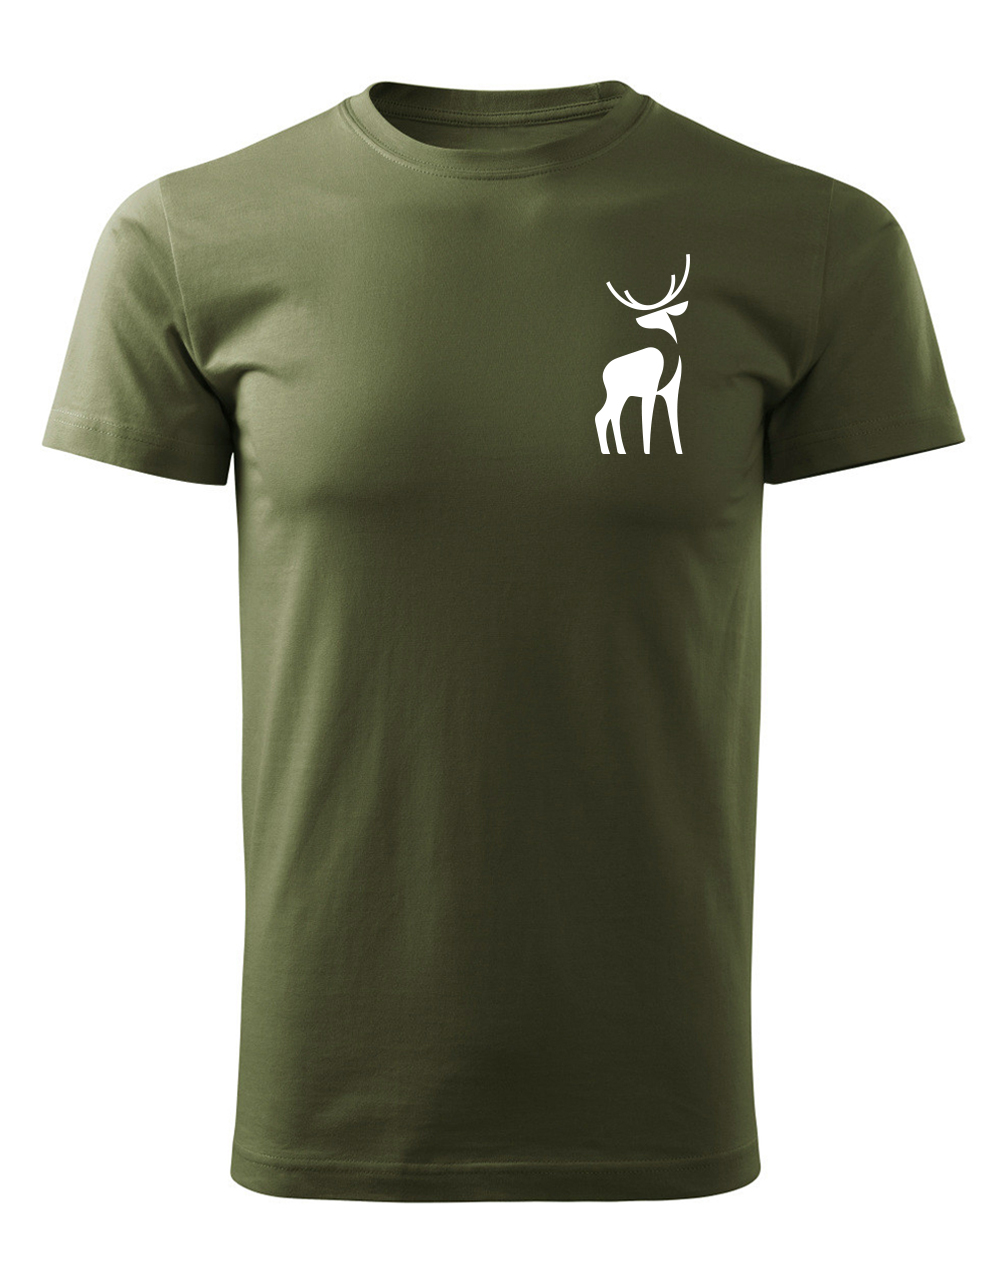 Pánské tričko s potiskem Jelen vojenská zelená